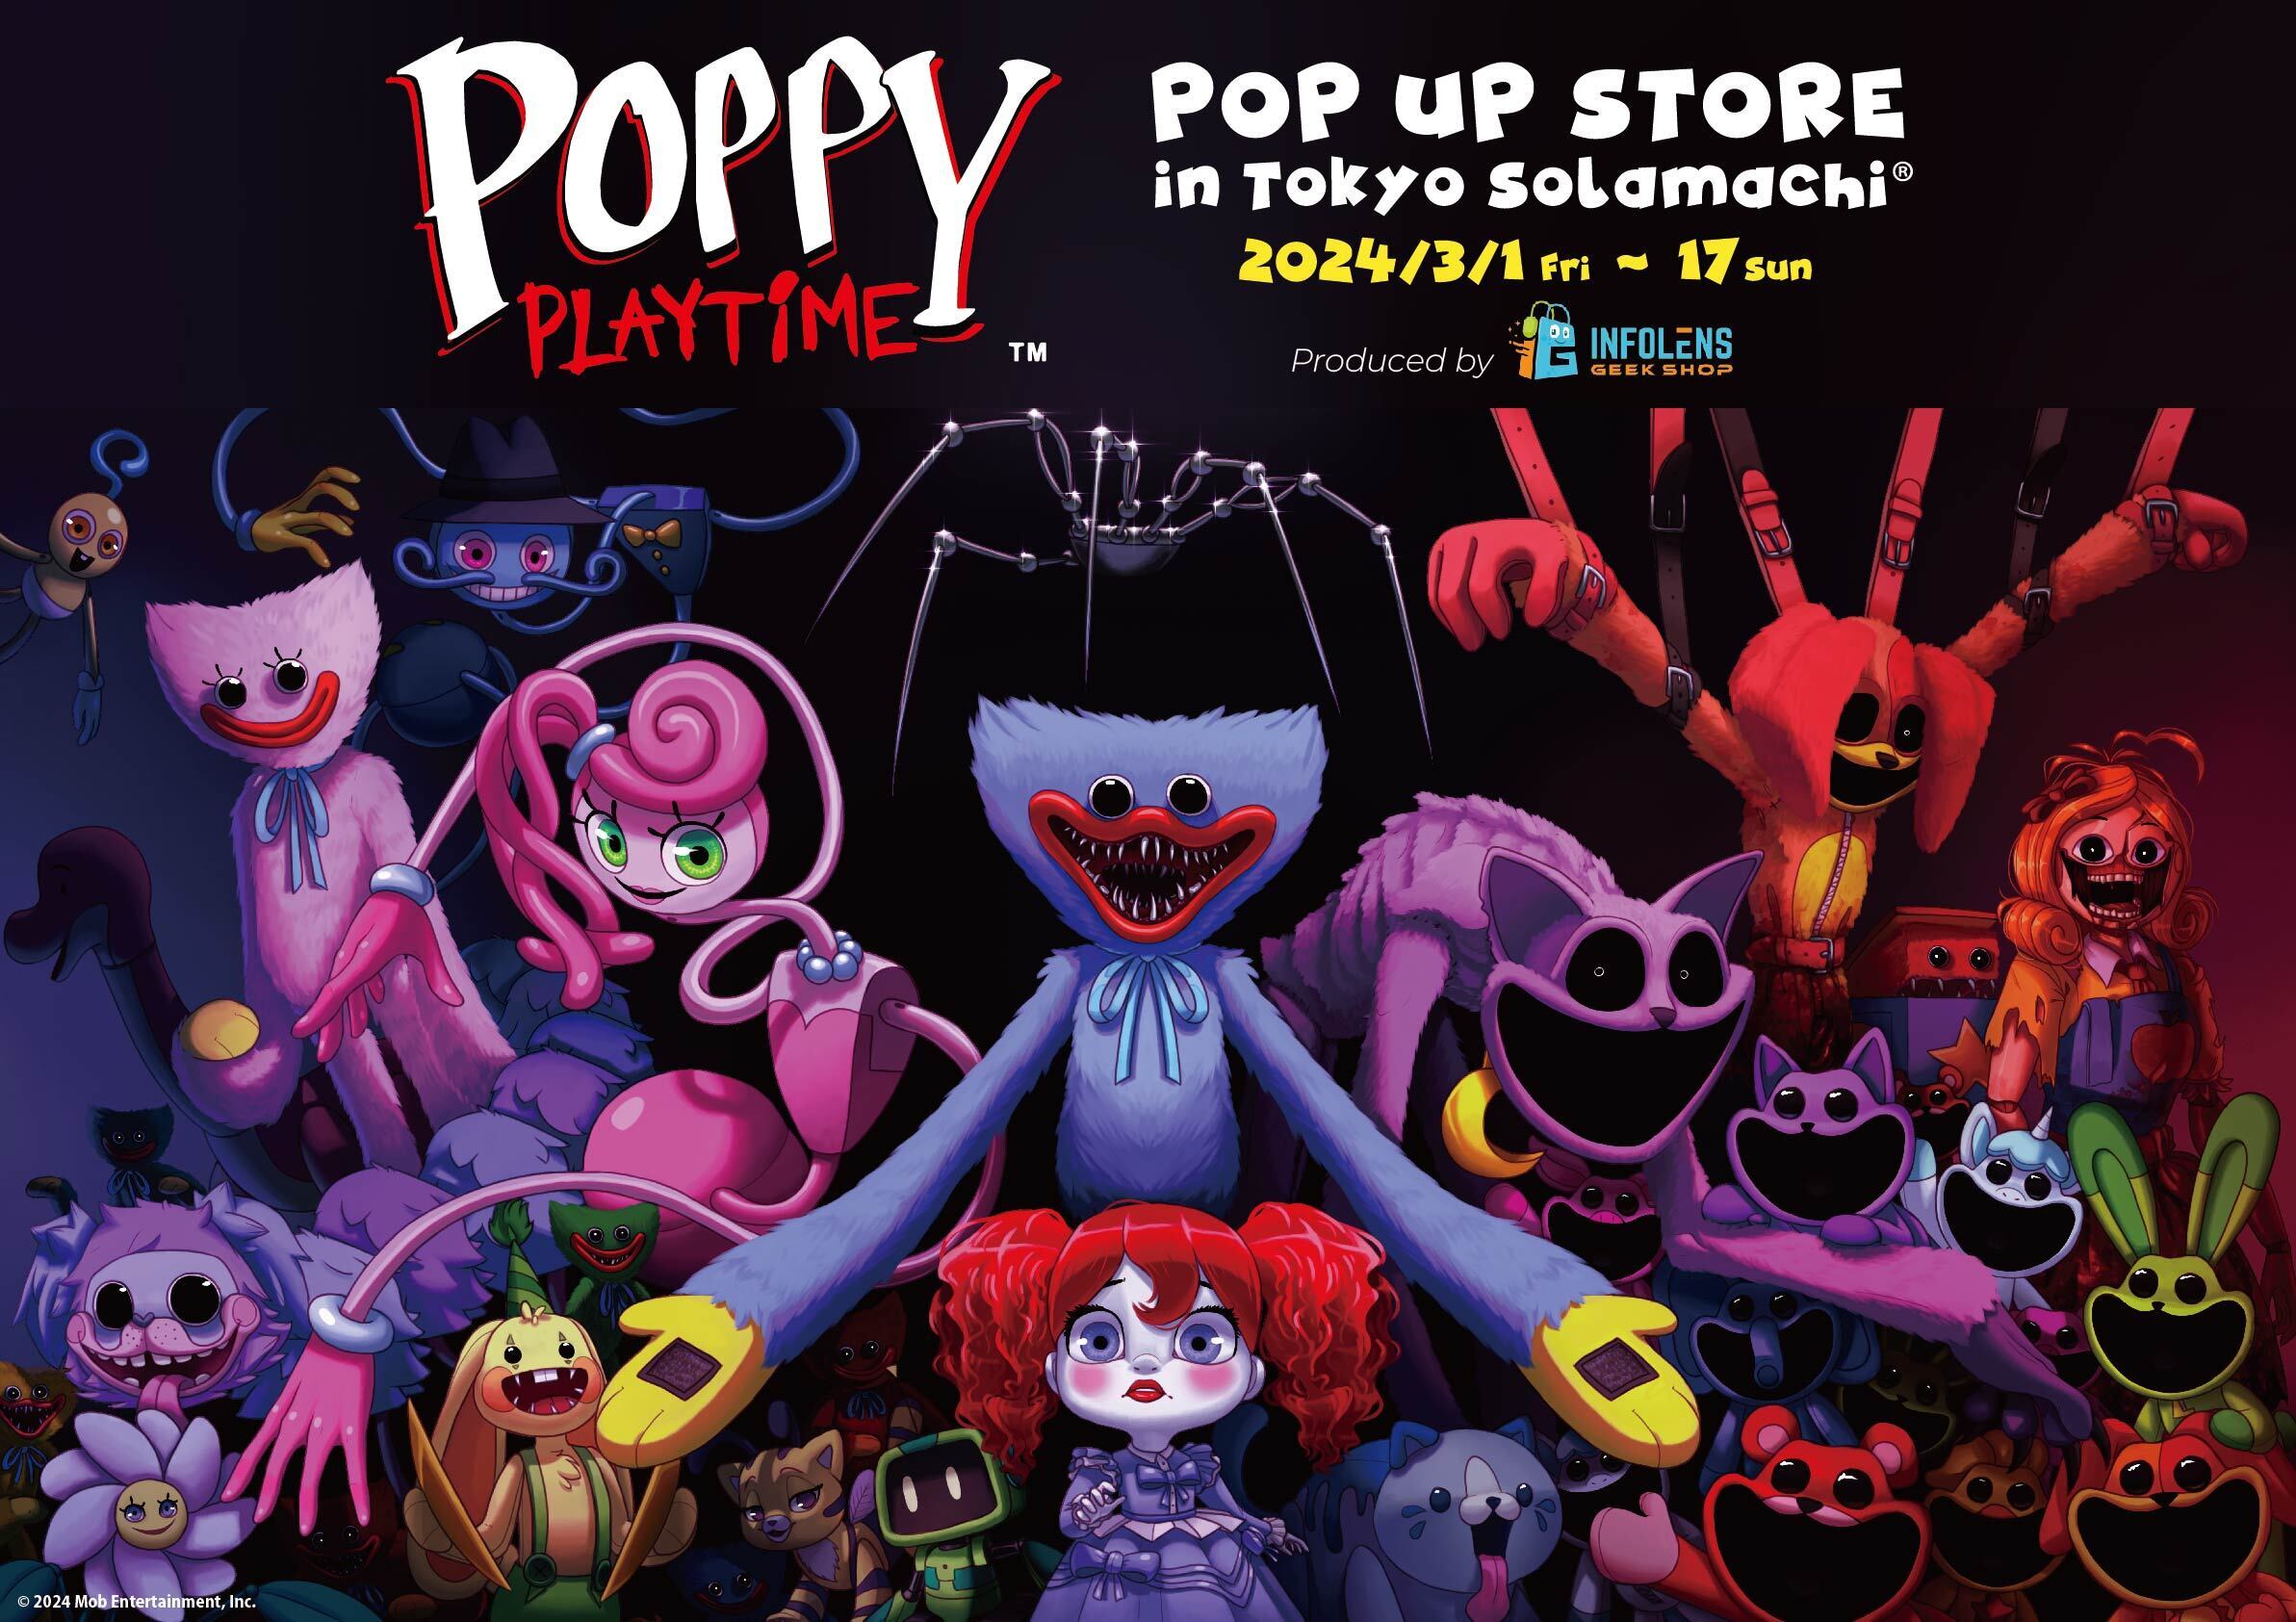 チャプター3配信に伴い更なる注目度！
人気ホラーゲーム「Poppy Playtime」公式POP UP STOREが
東京ソラマチ(R)に再来！